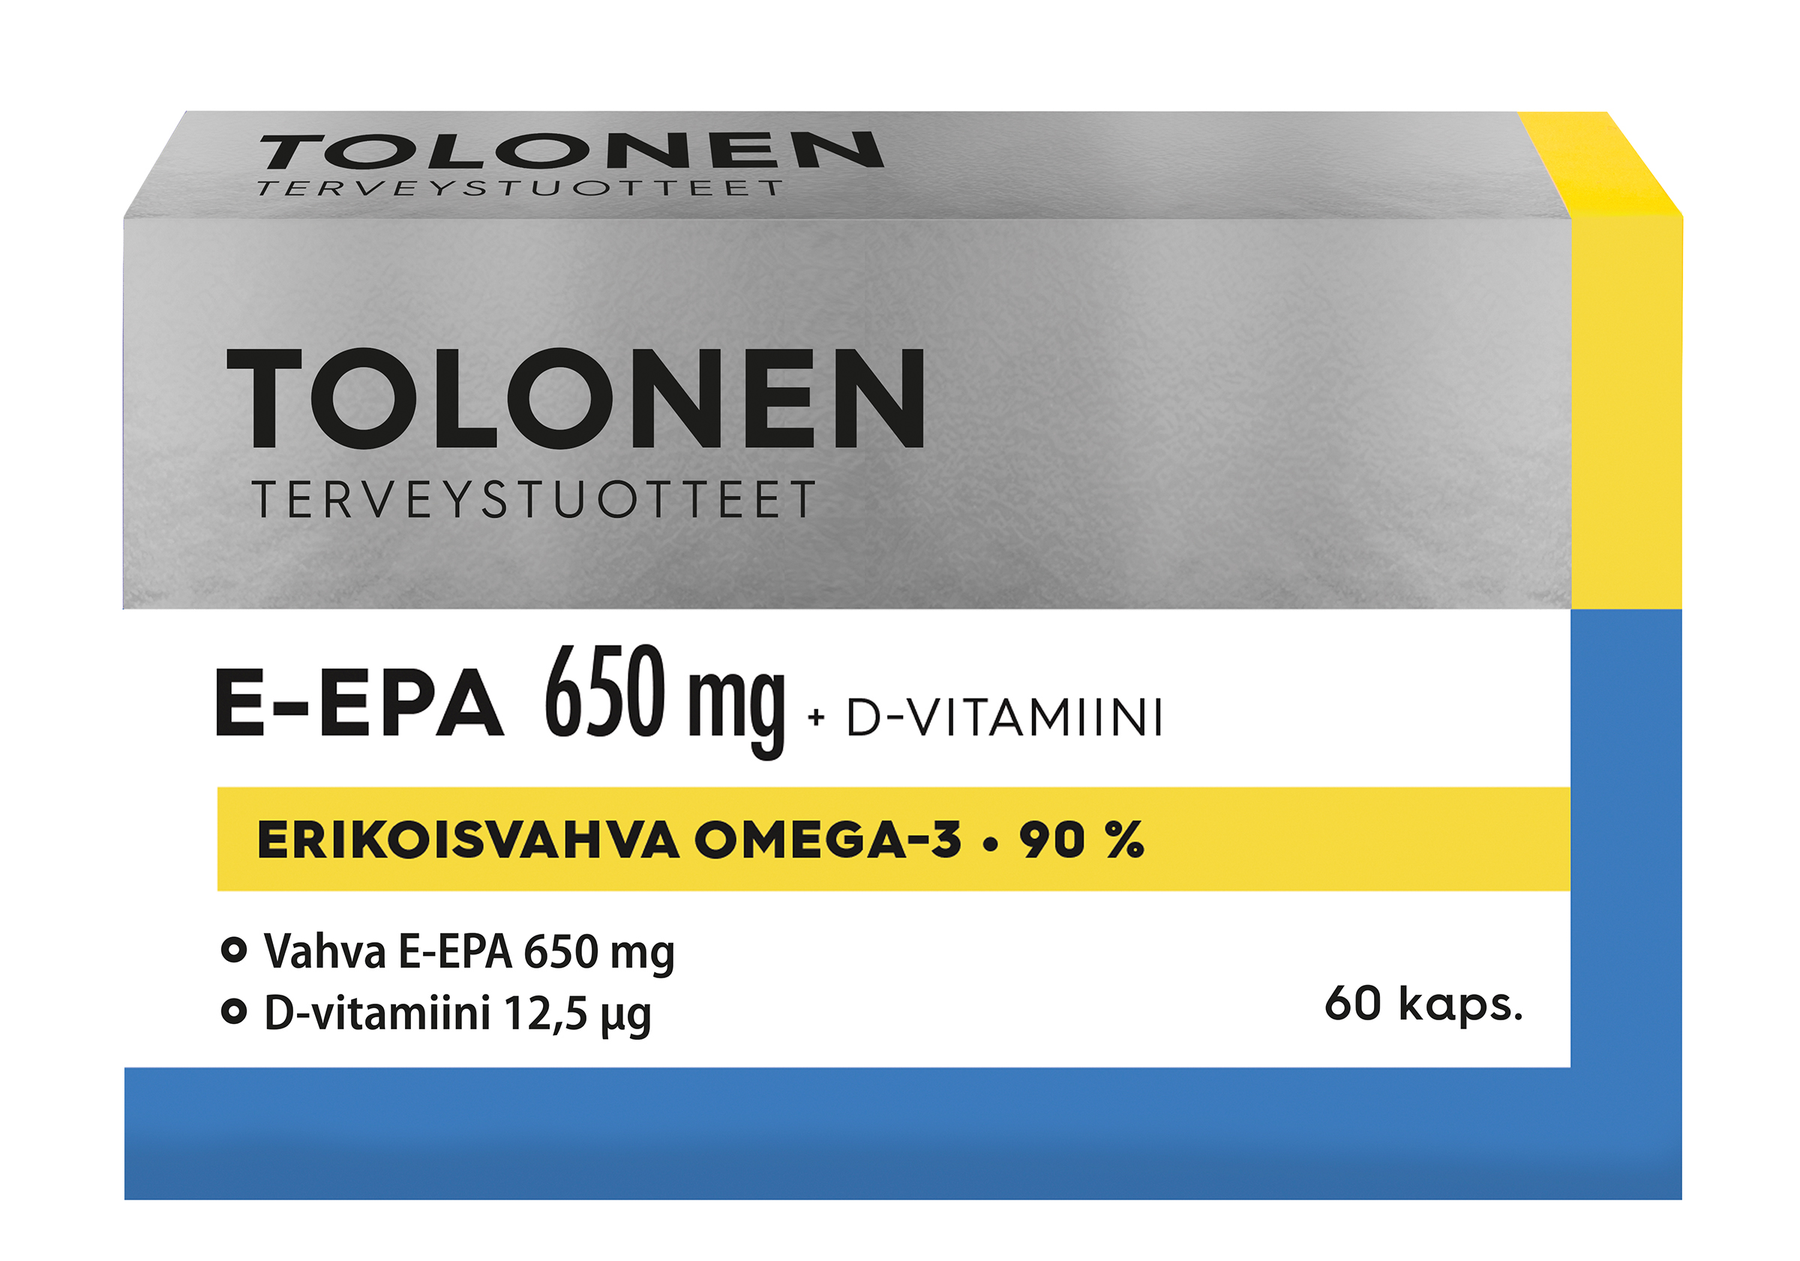 Tolonen E-EPA 650 mg + D-vitamiini 60 kaps. - Päiväys 31/10/2023